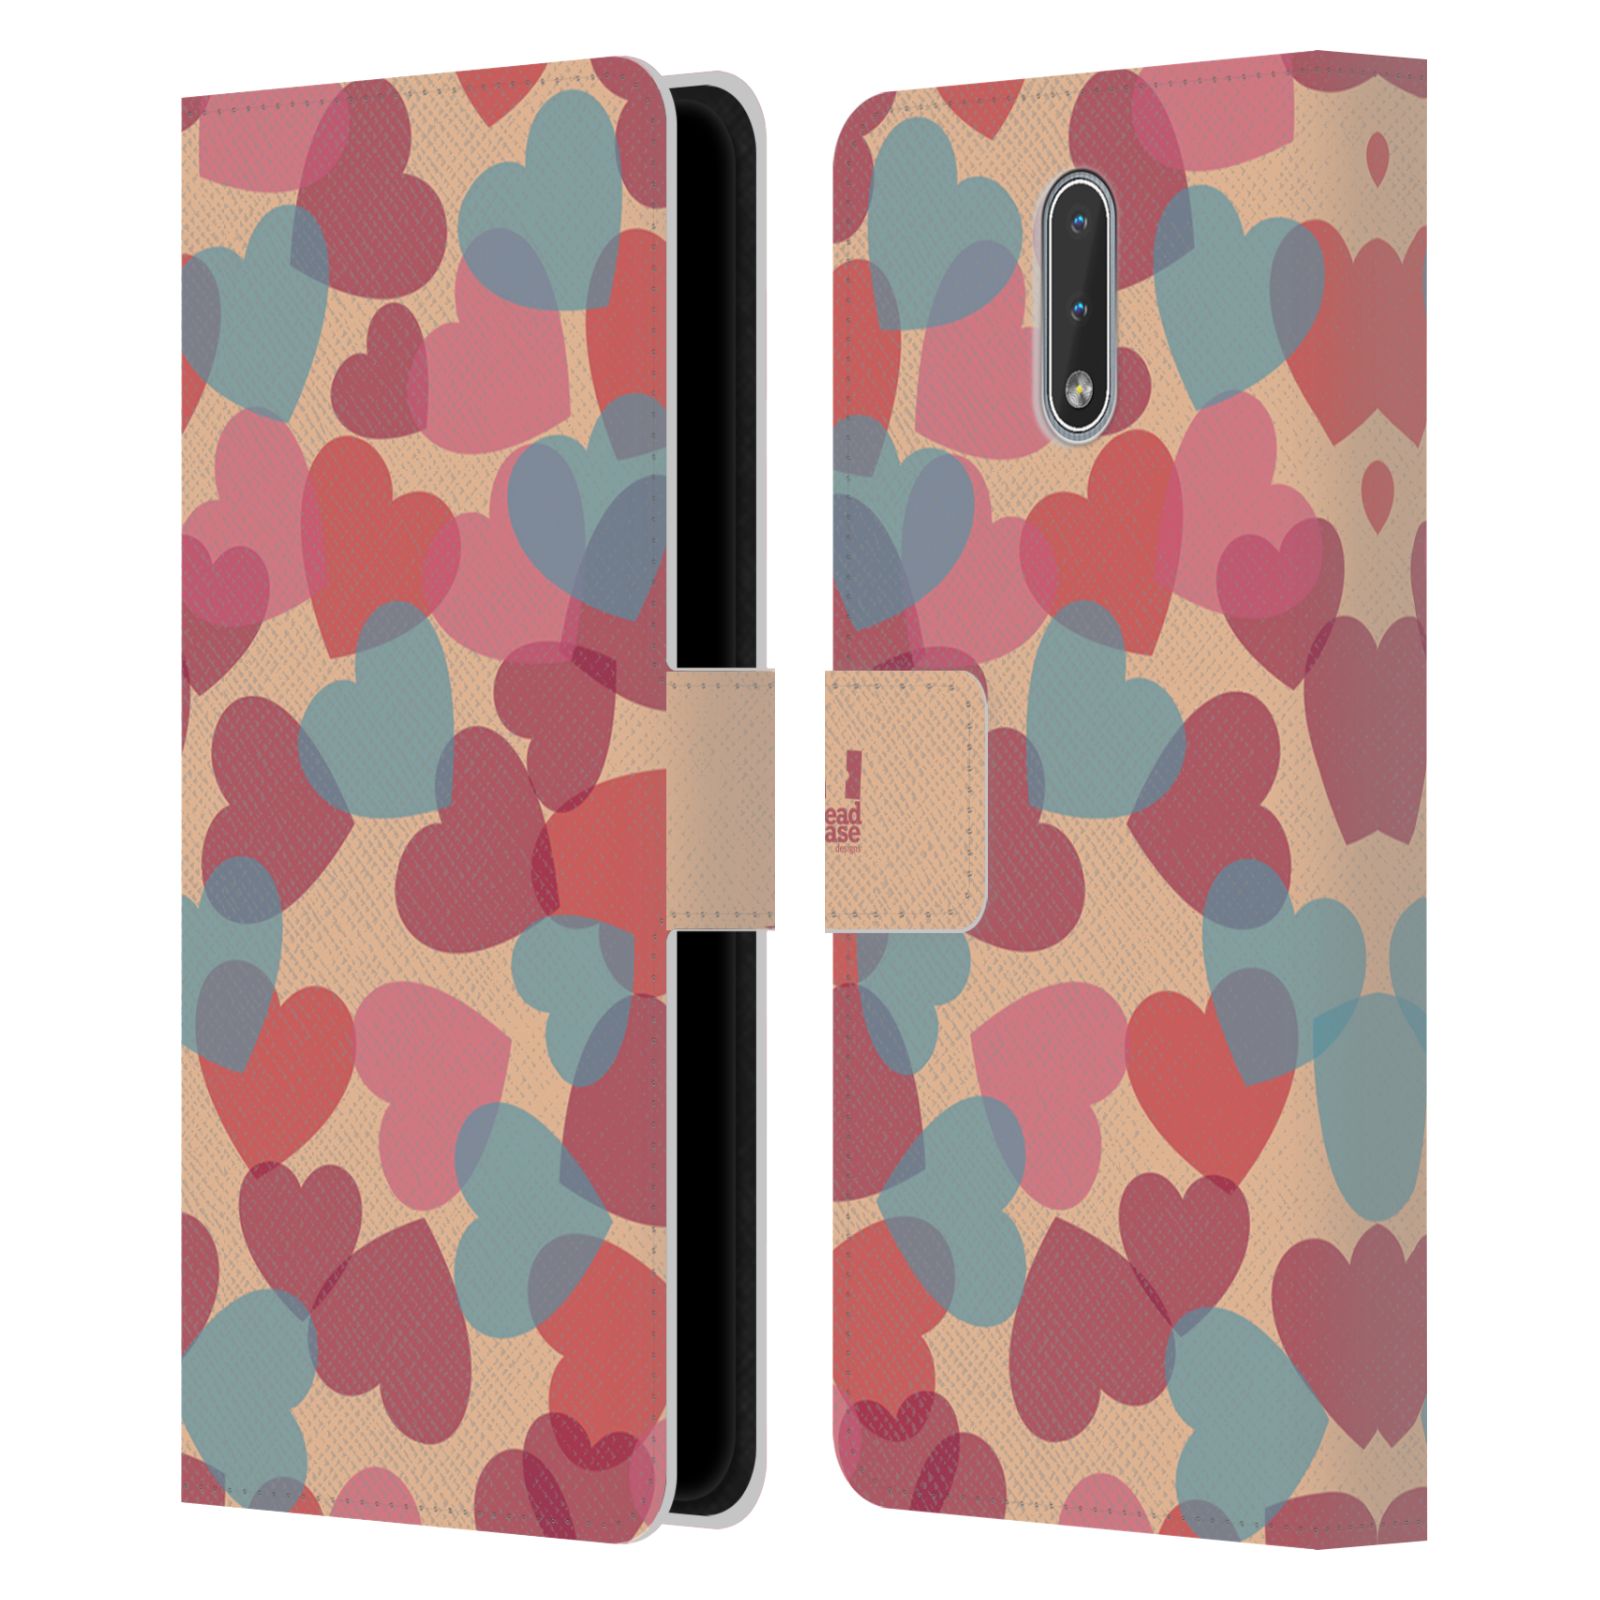 Pouzdro HEAD CASE na mobil Nokia 2.3 vzor prolínající se srdíčka, srdce, láska, růžová